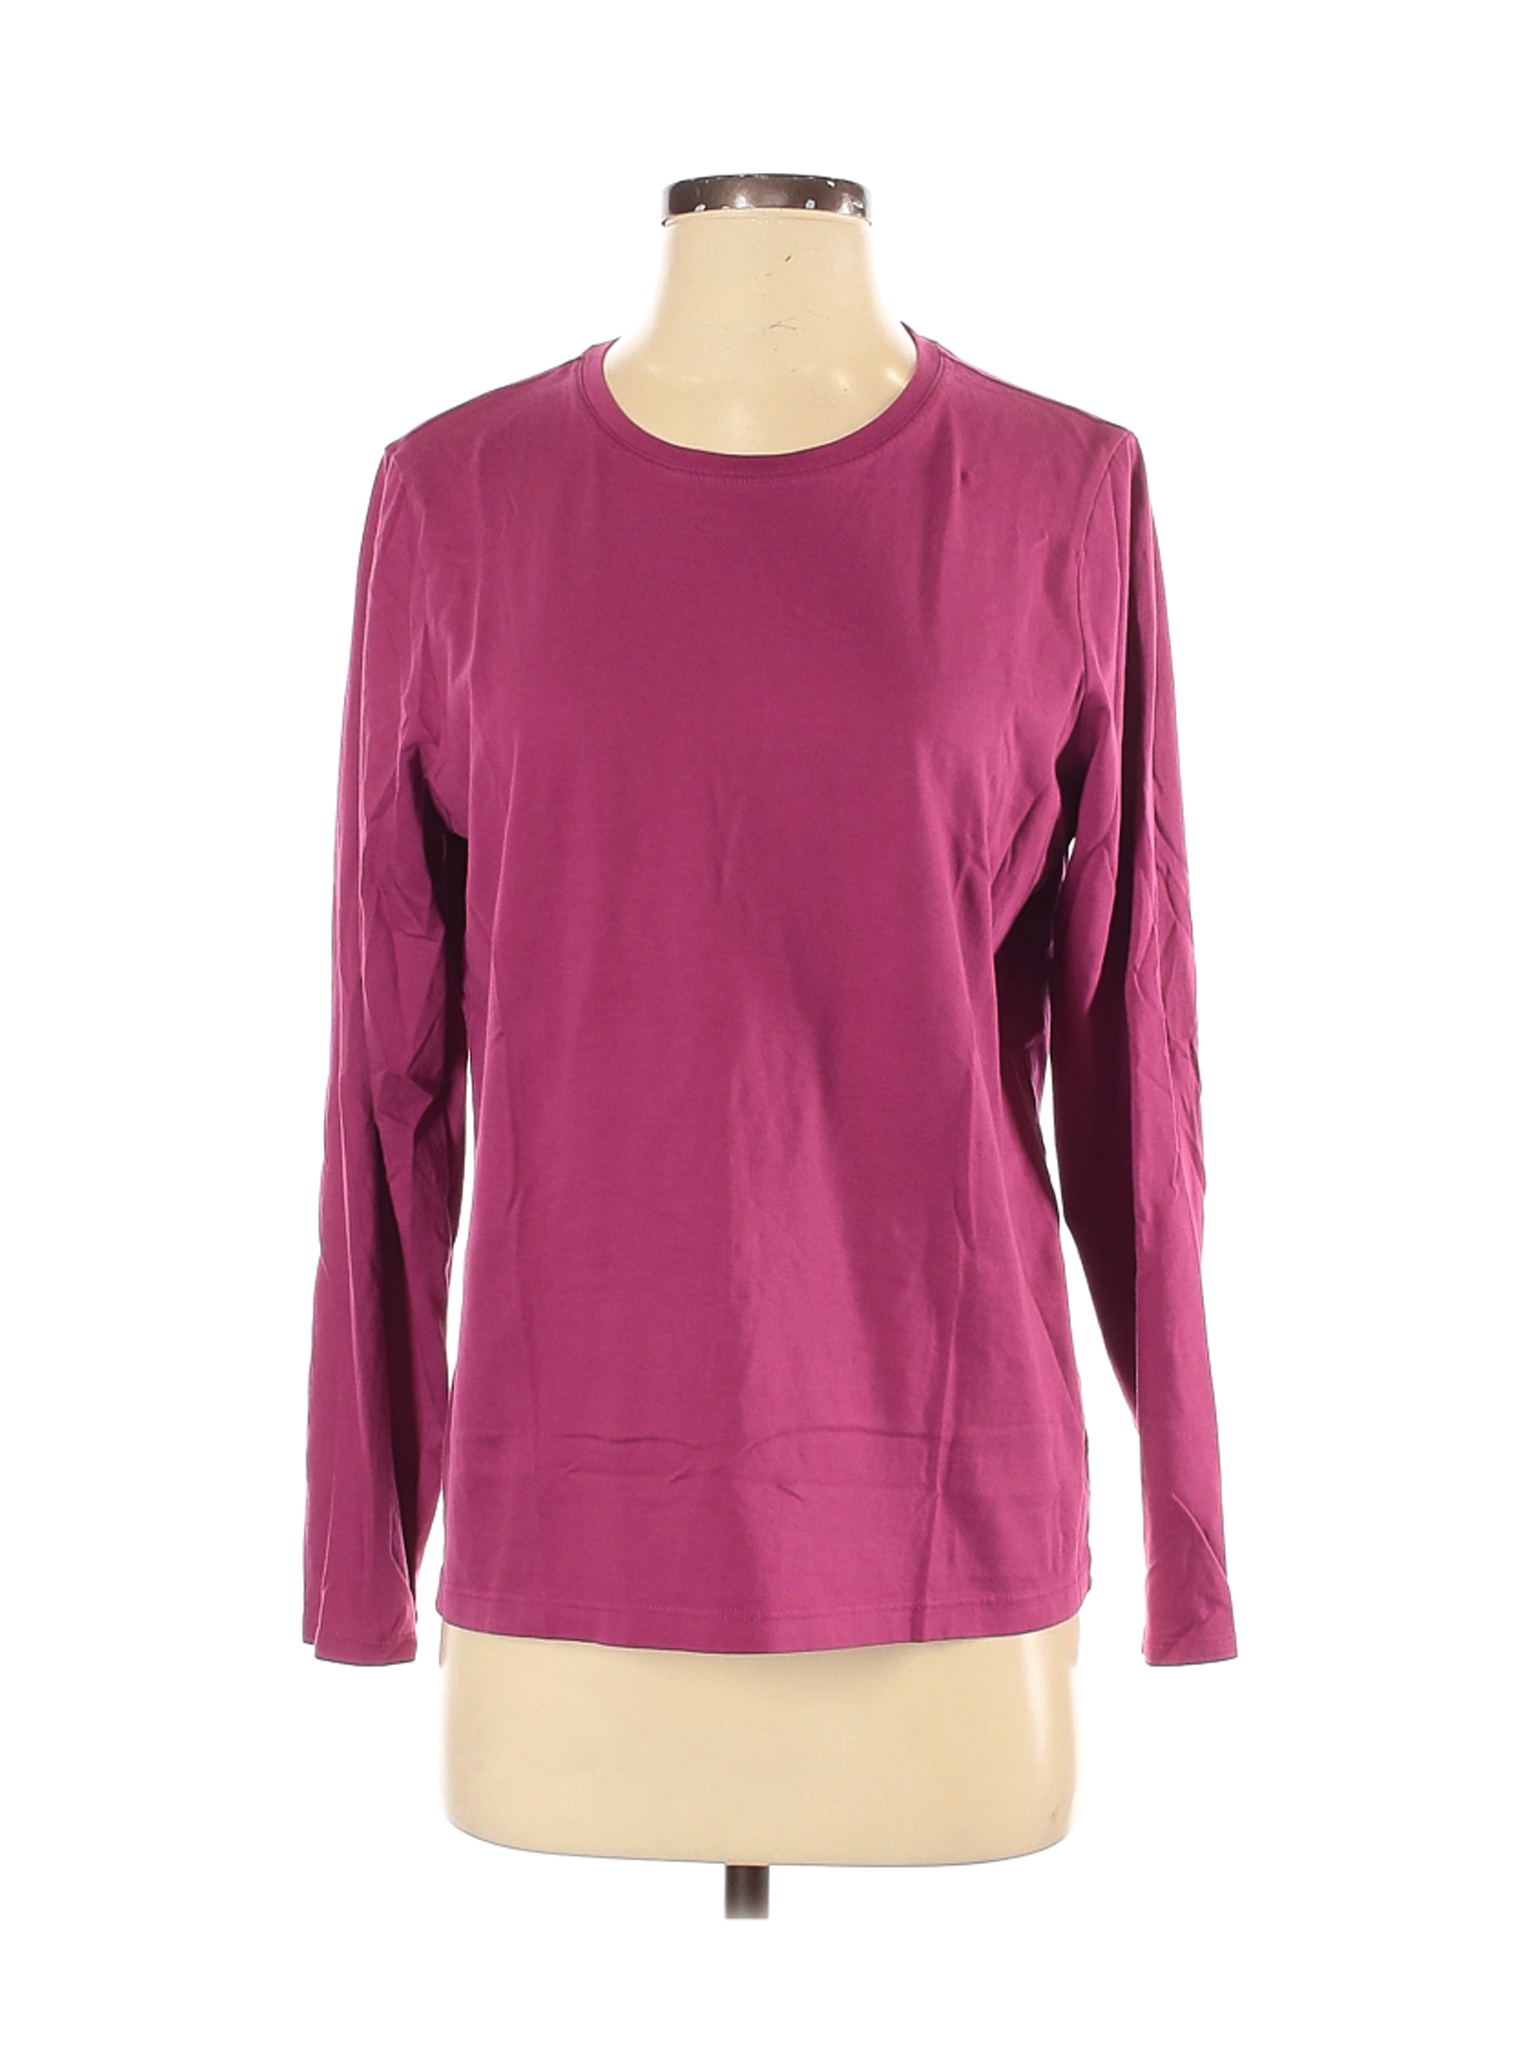 Lands' End Women Pink Long Sleeve T-Shirt M | eBay